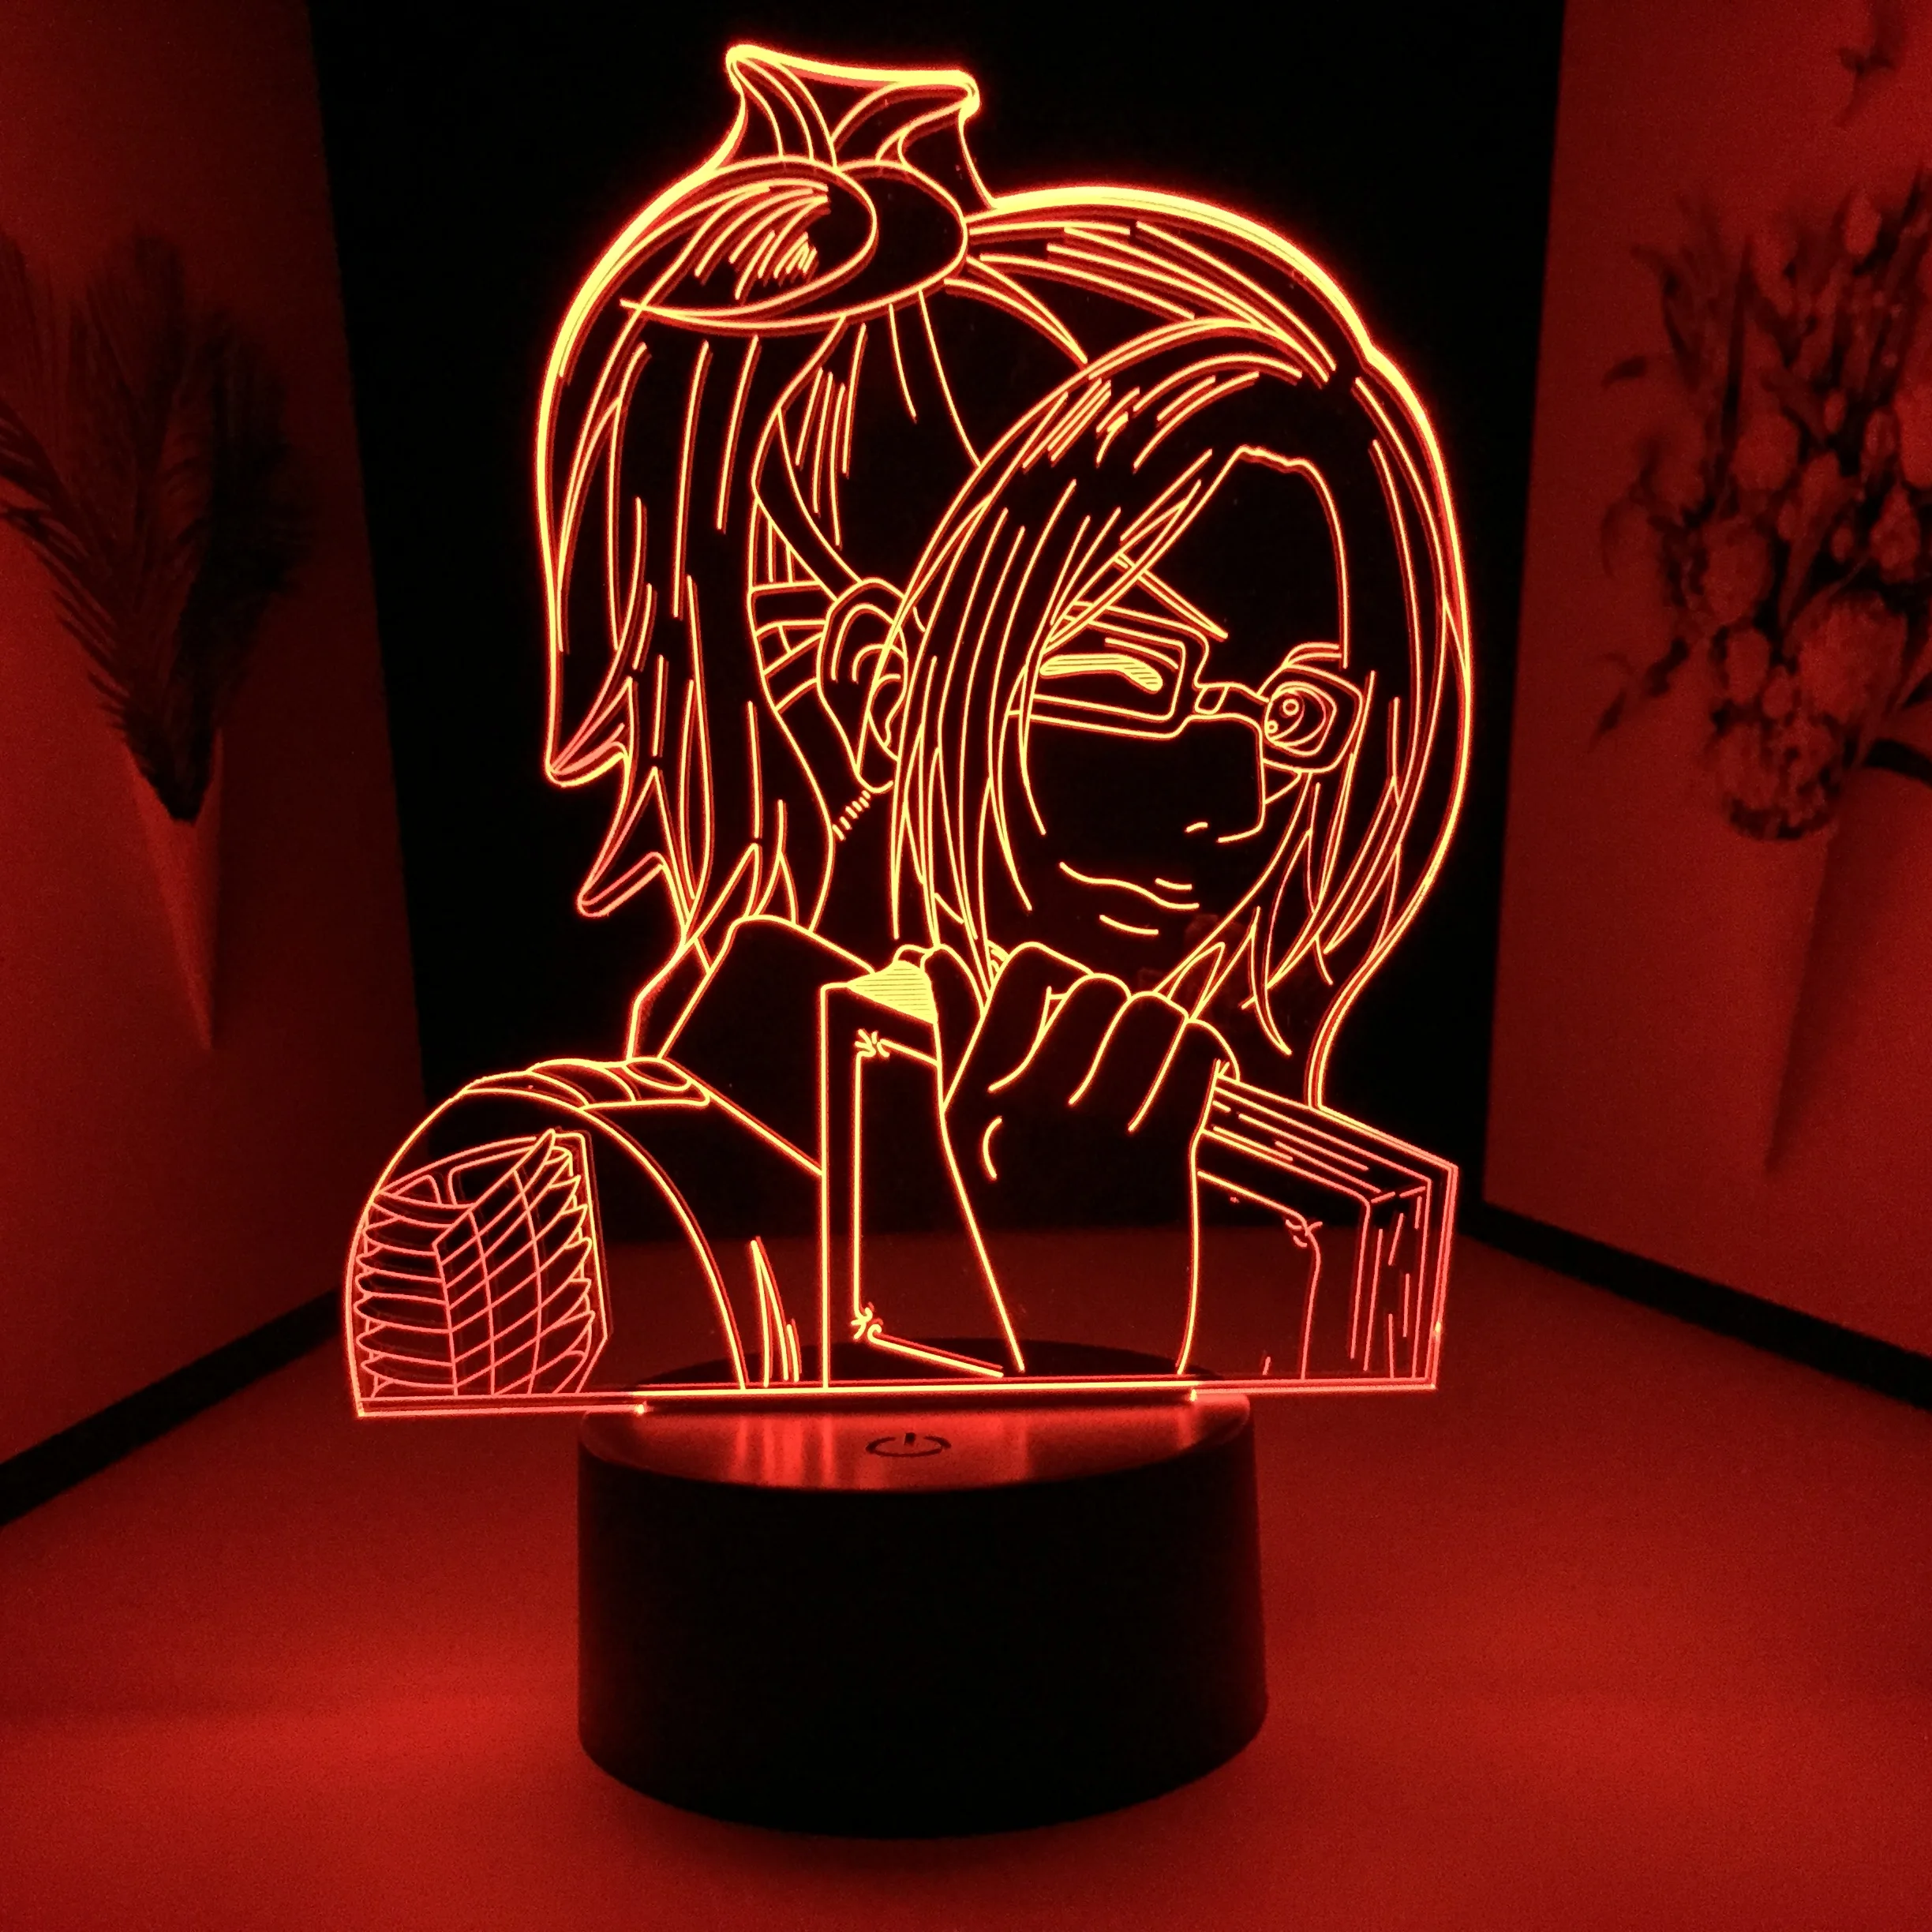 Светильник Hange Zoe из аниме атака на Титанов светодиодный ночник 3D для украшения